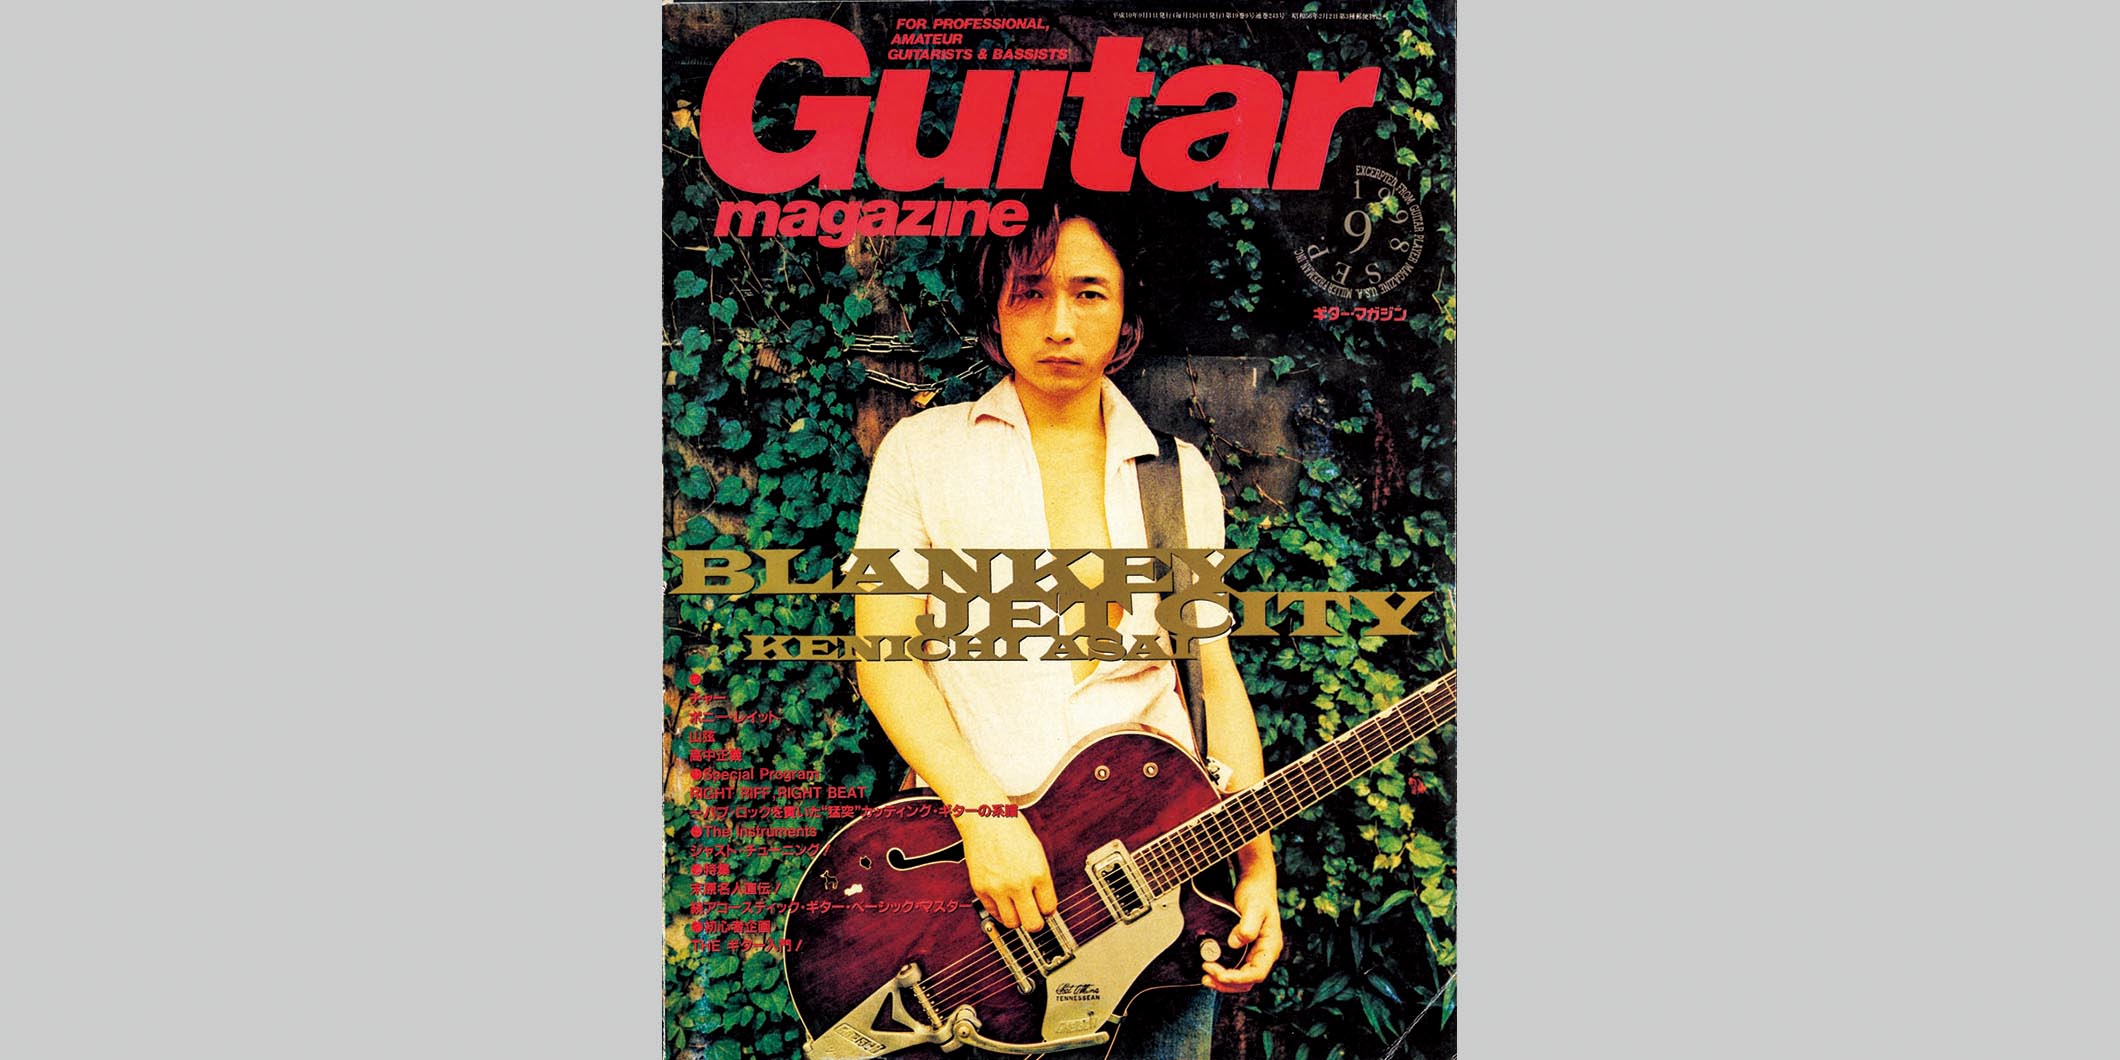 ギター・マガジン1998年9月号　表紙：ブランキー・ジェット・シティ